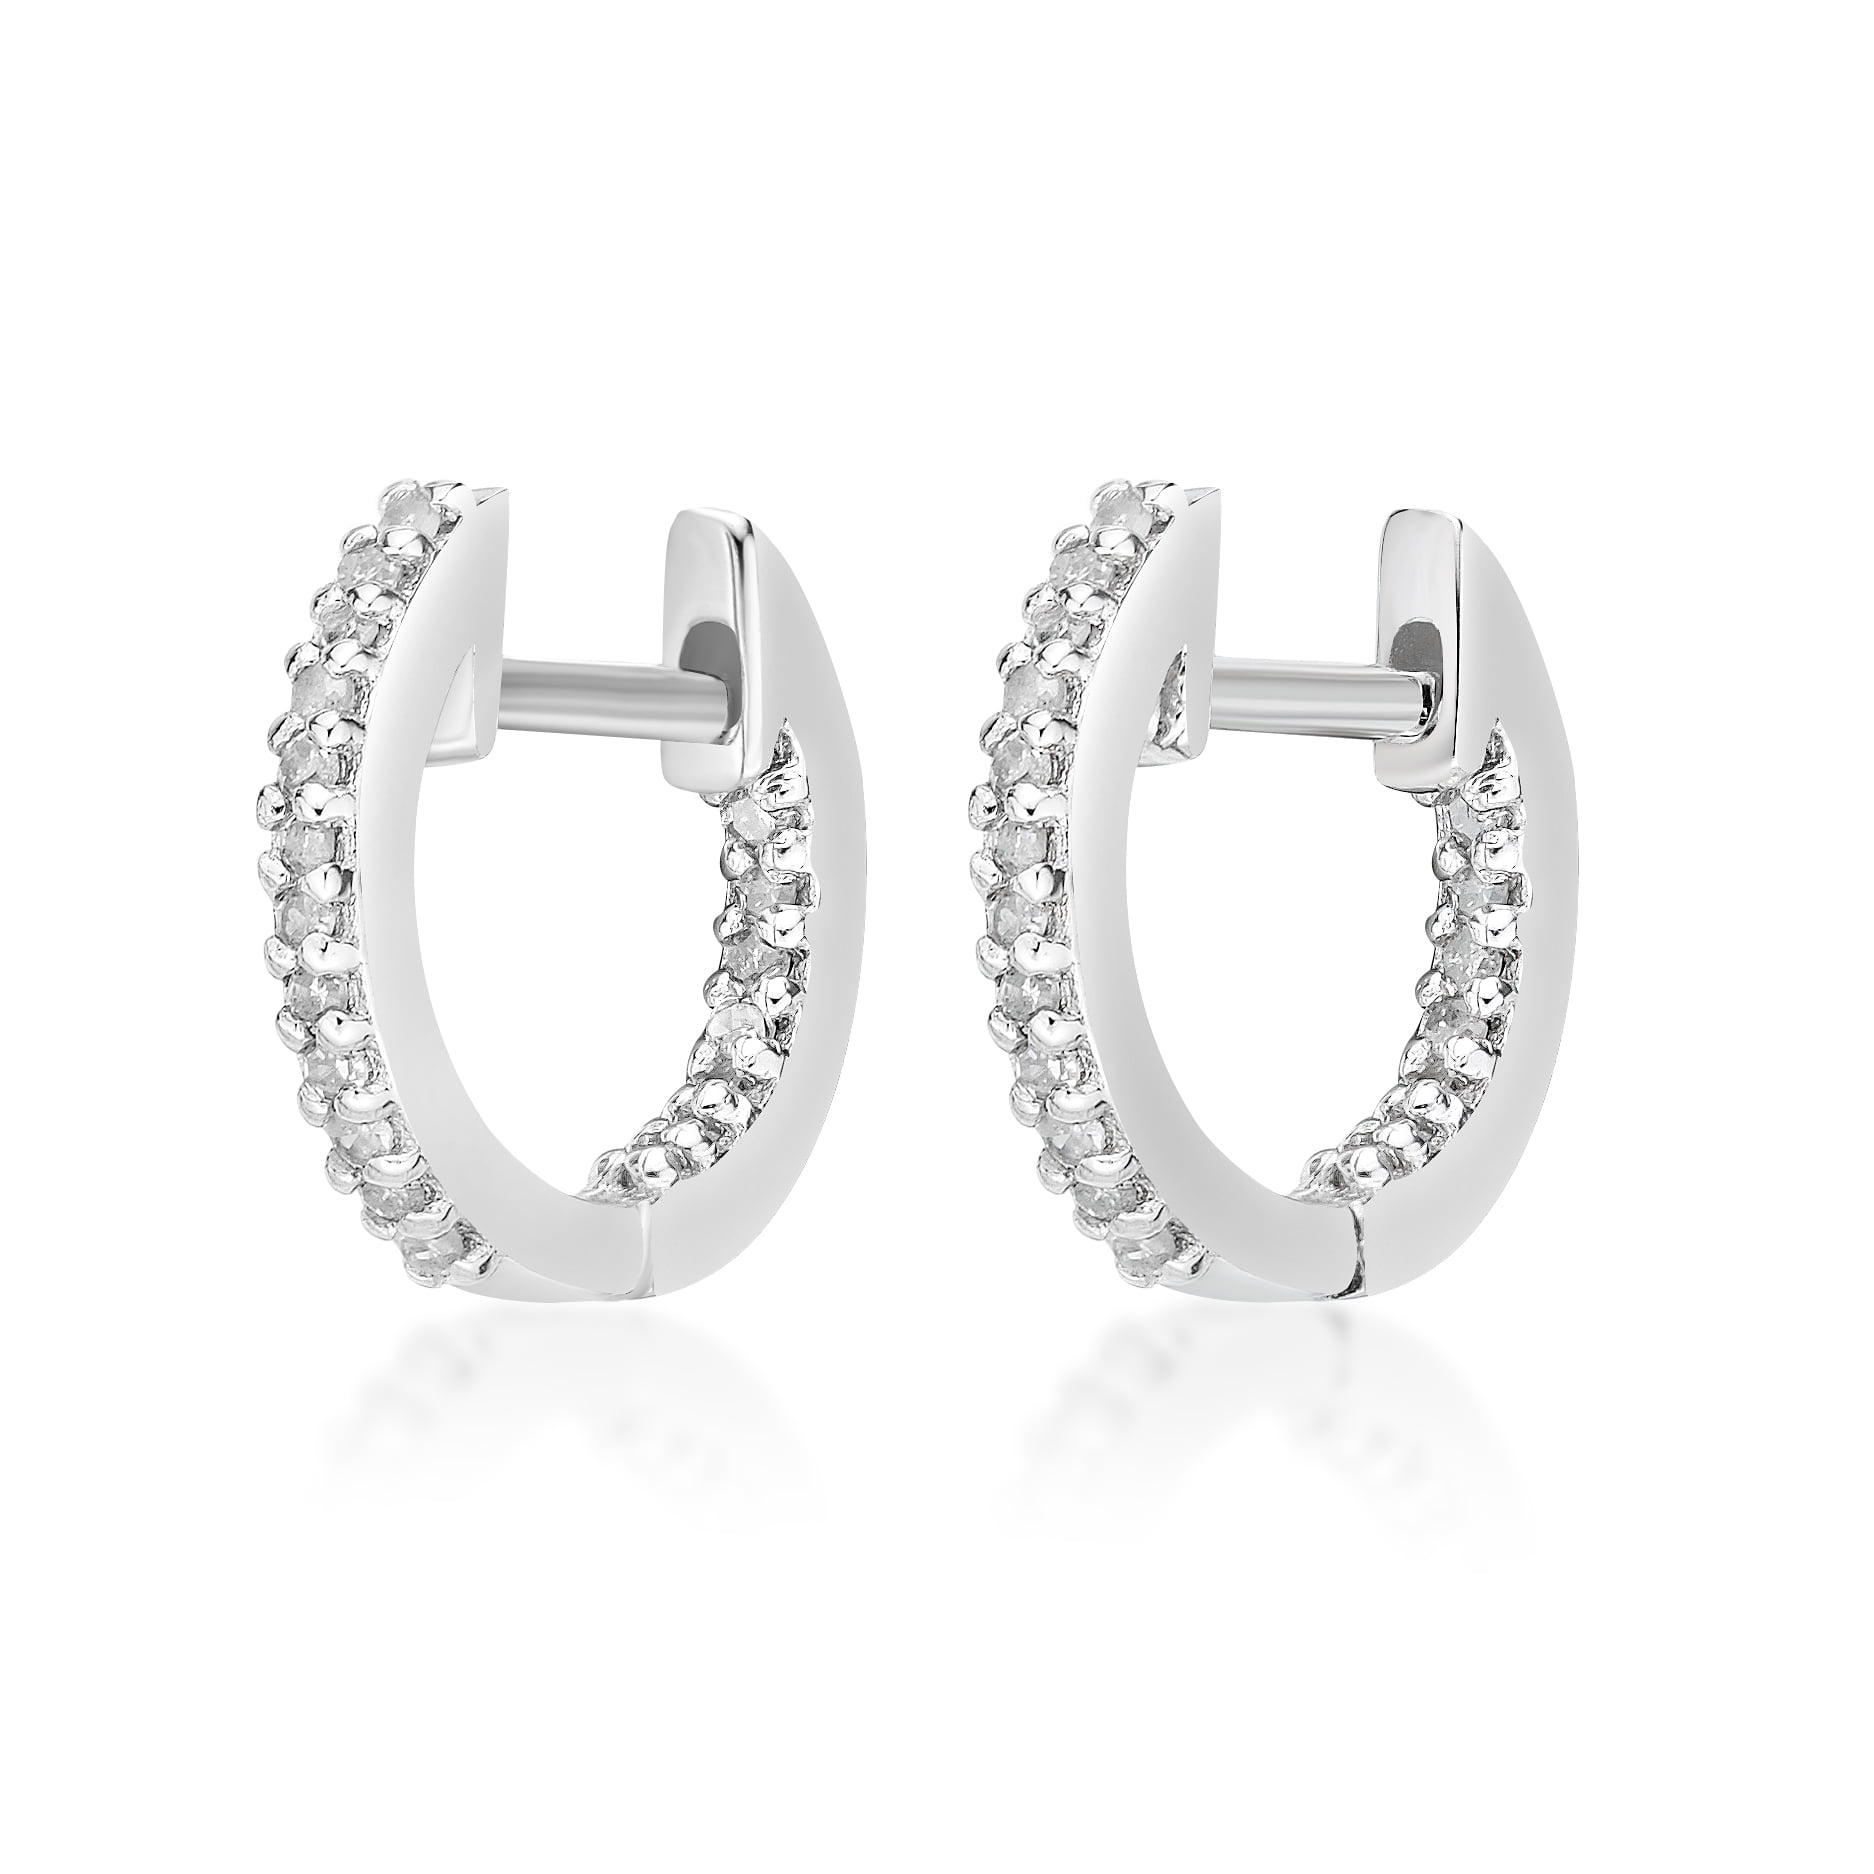 49067-earrings-diamond-silver-2.jpg